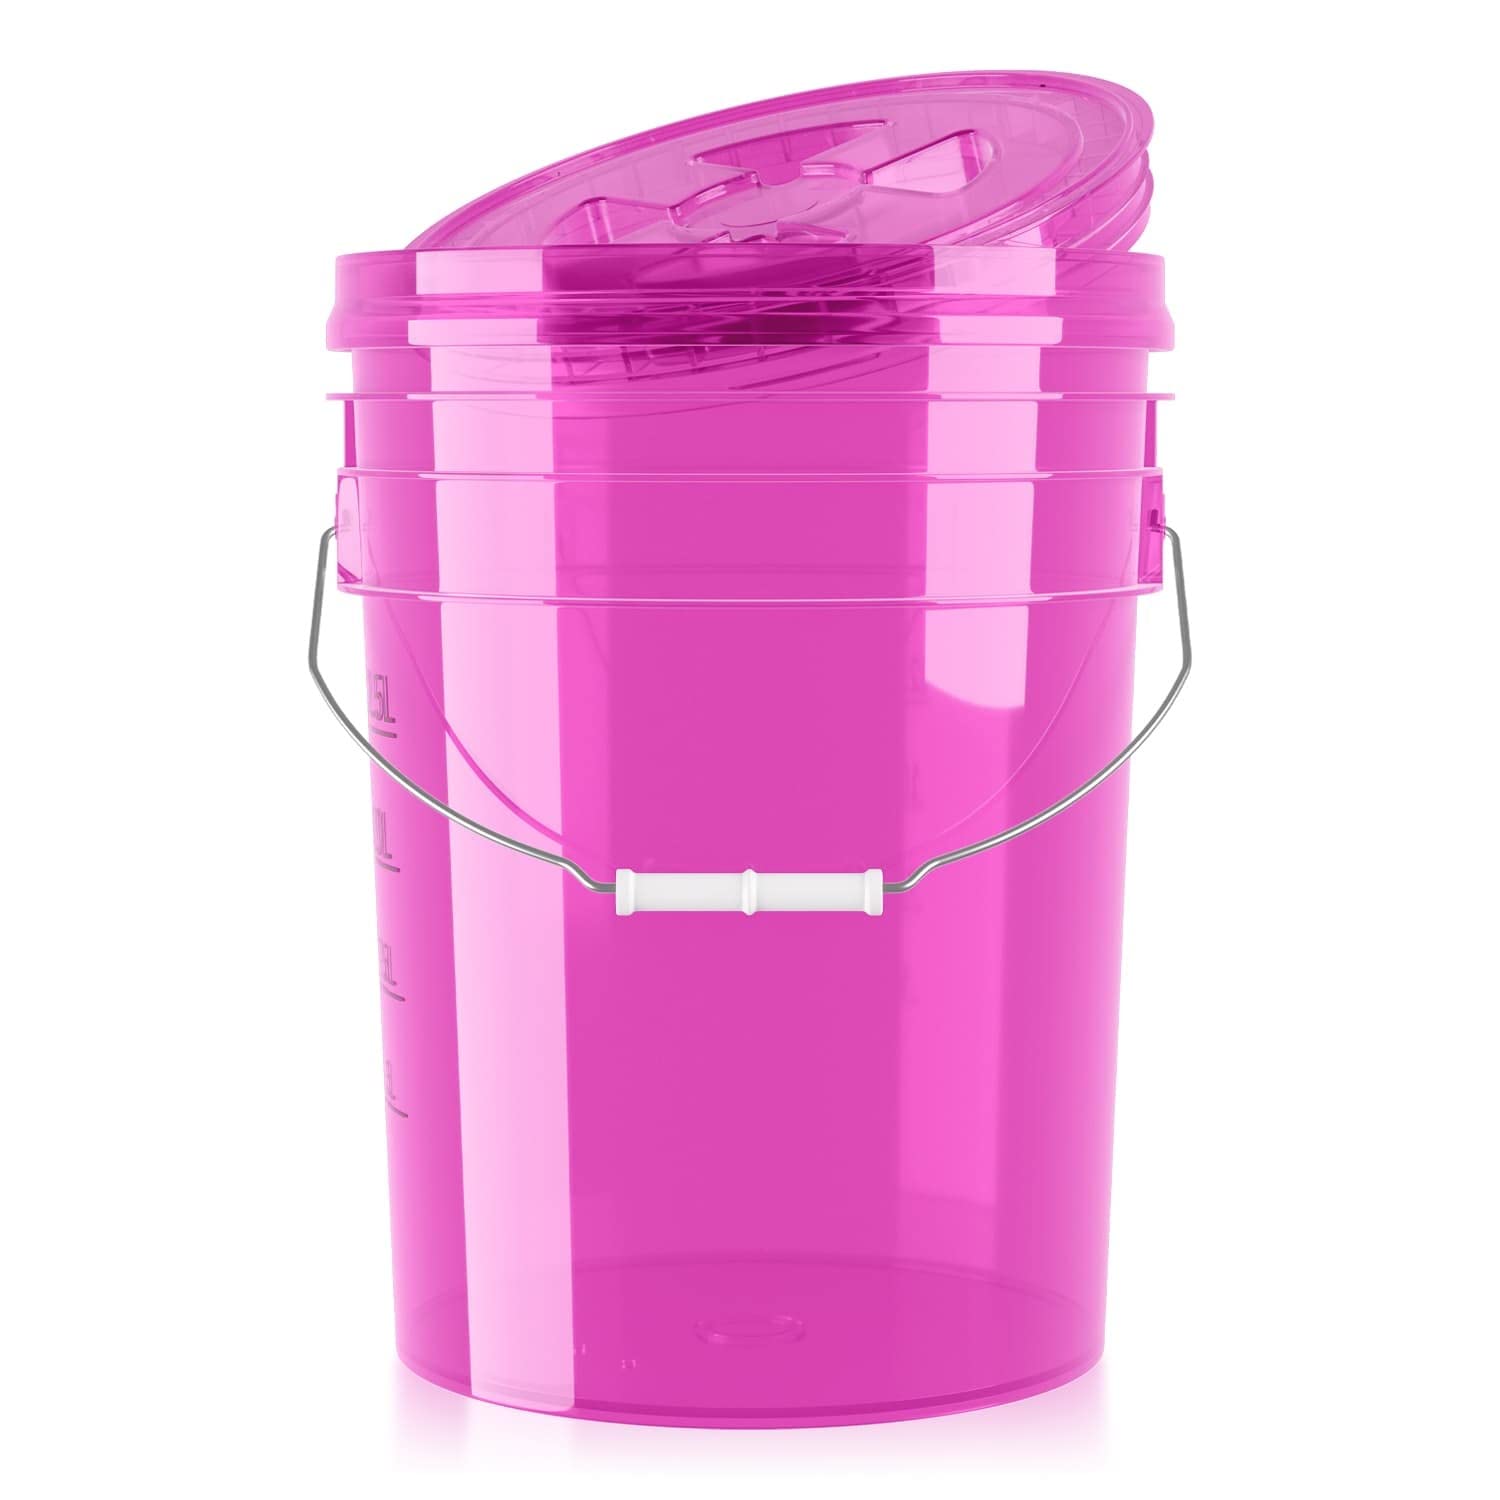 PERFORMANCE BUCKET Wascheimer für die Auto Handwäsche inkl. Deckel (clear pink) | 5GAL/19L - kompatibel: Detail Guardz - Dirt Lock & Scrub Wall, Dirt Trap Schmutzsieb & Gamma Lid | chemicalworkz von Shiny Freaks